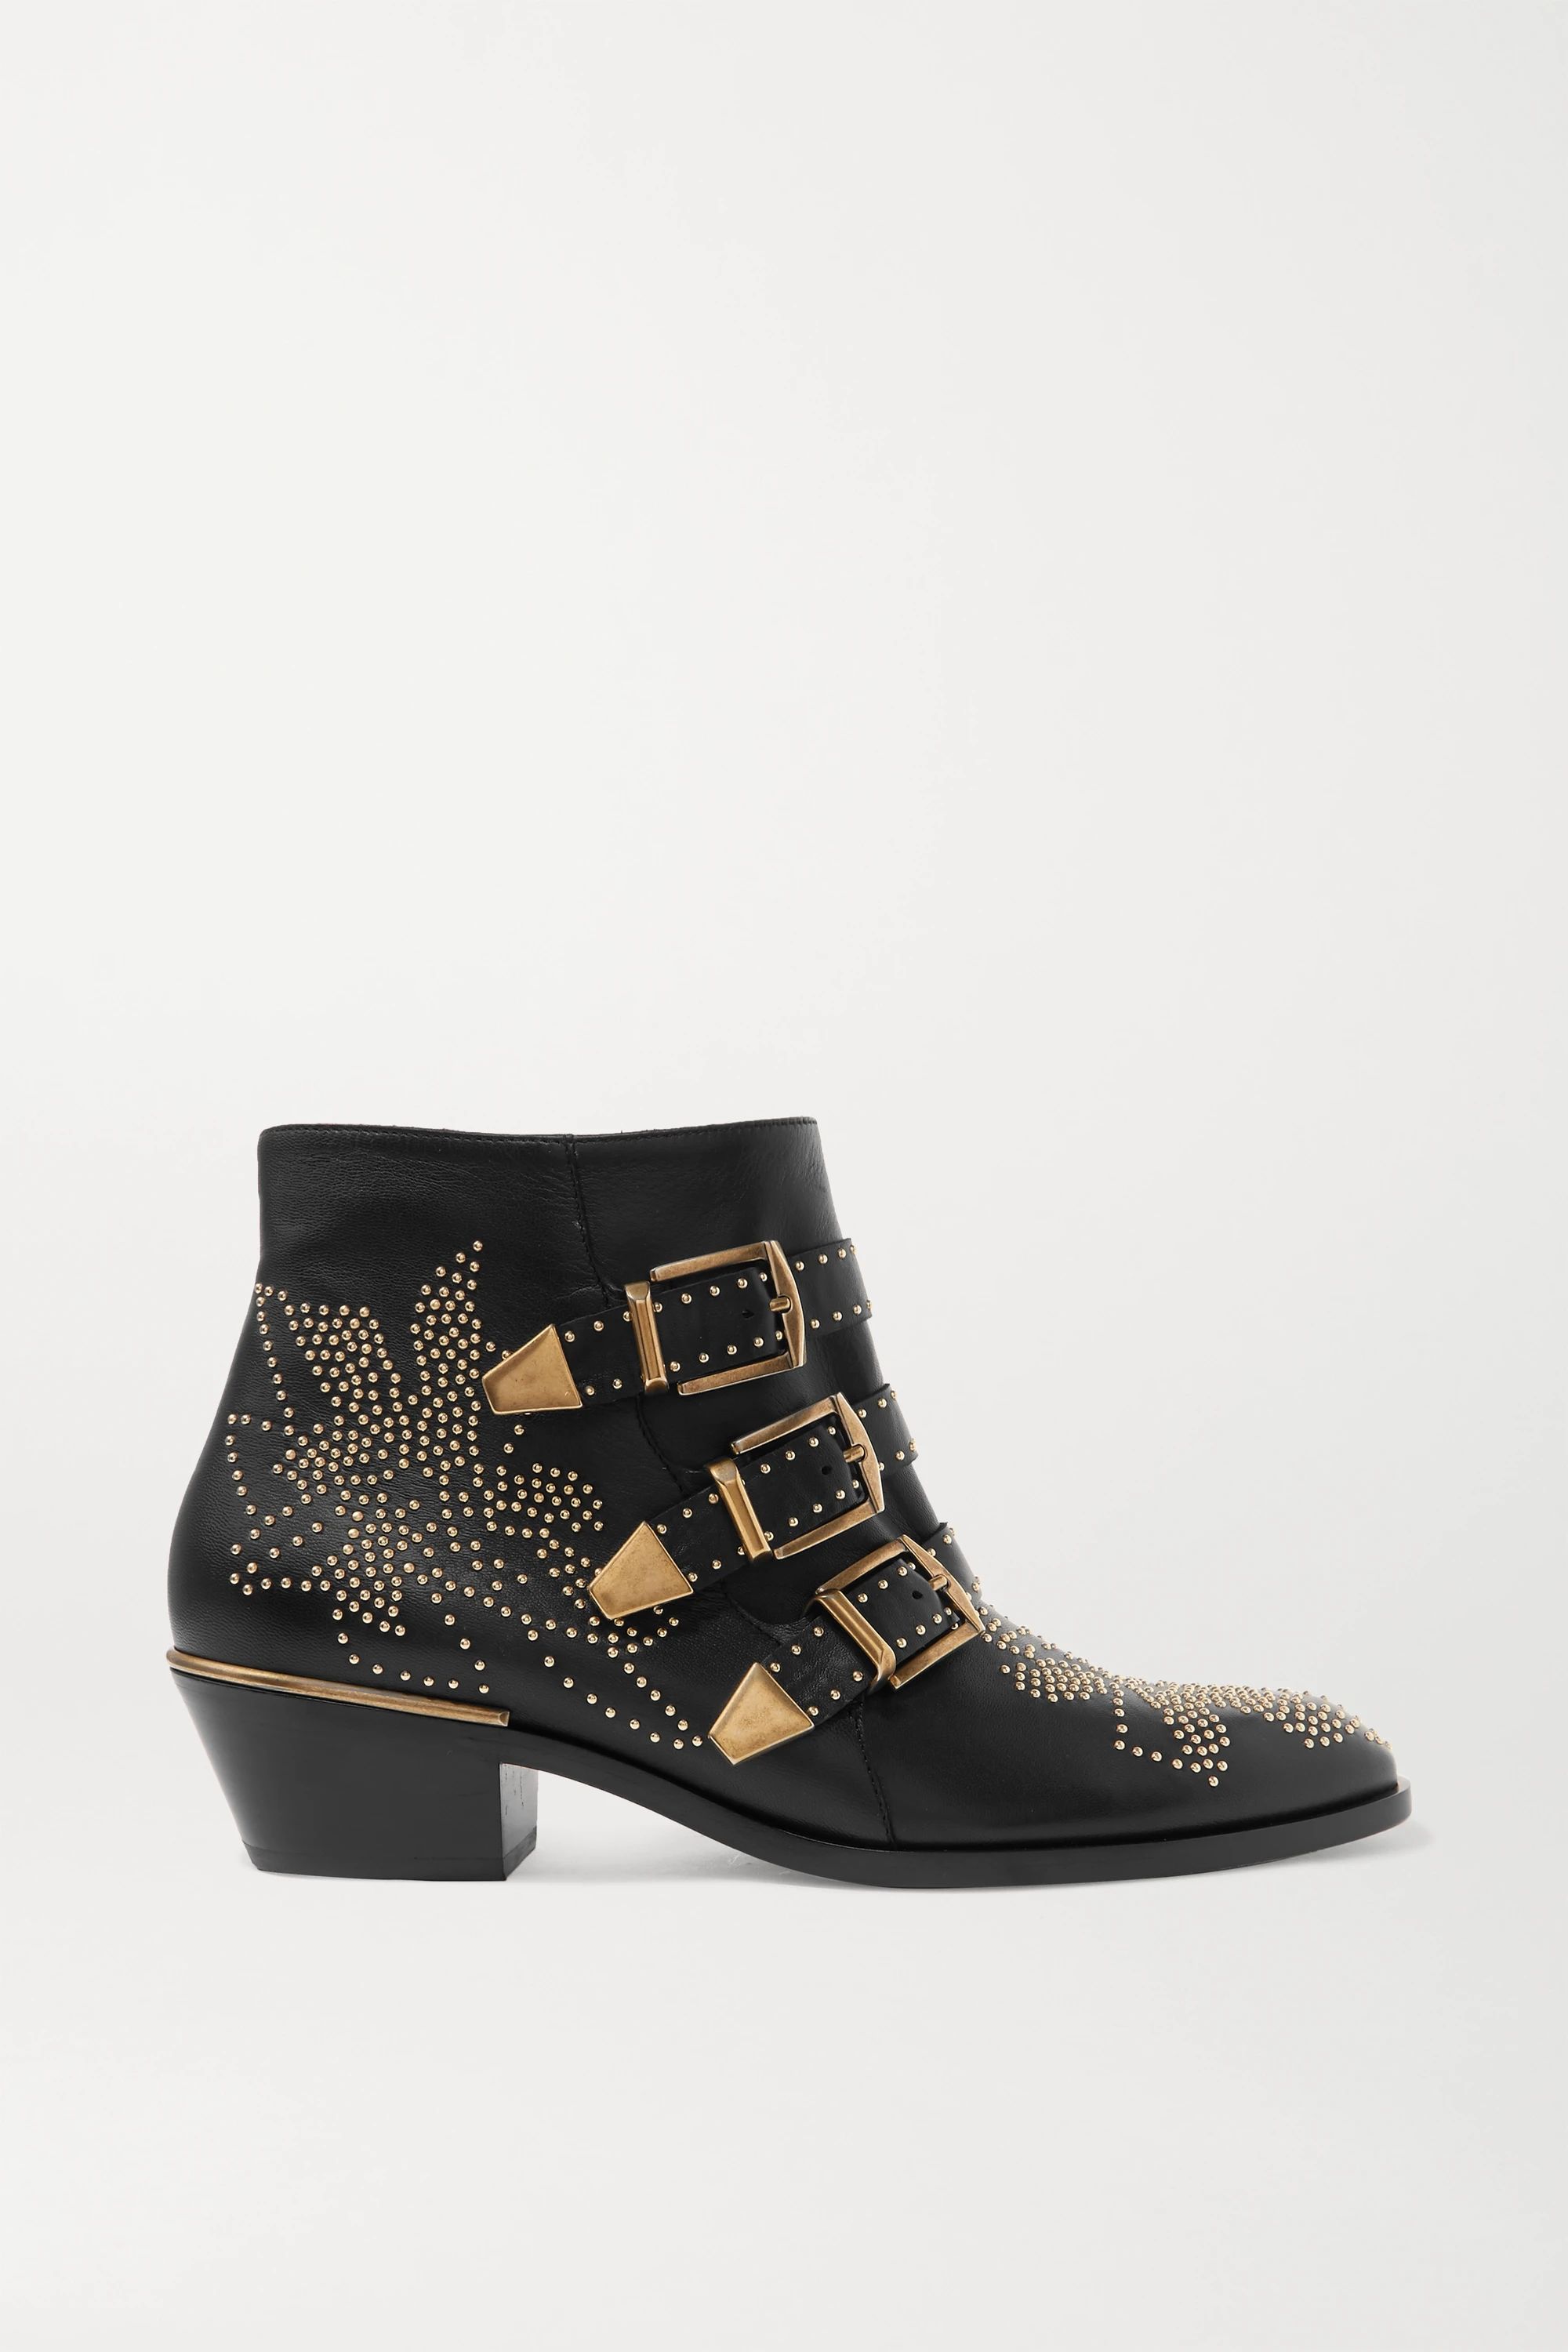 Black Susanna studded leather ankle boots | Chloé | NET-A-PORTER | NET-A-PORTER (US)